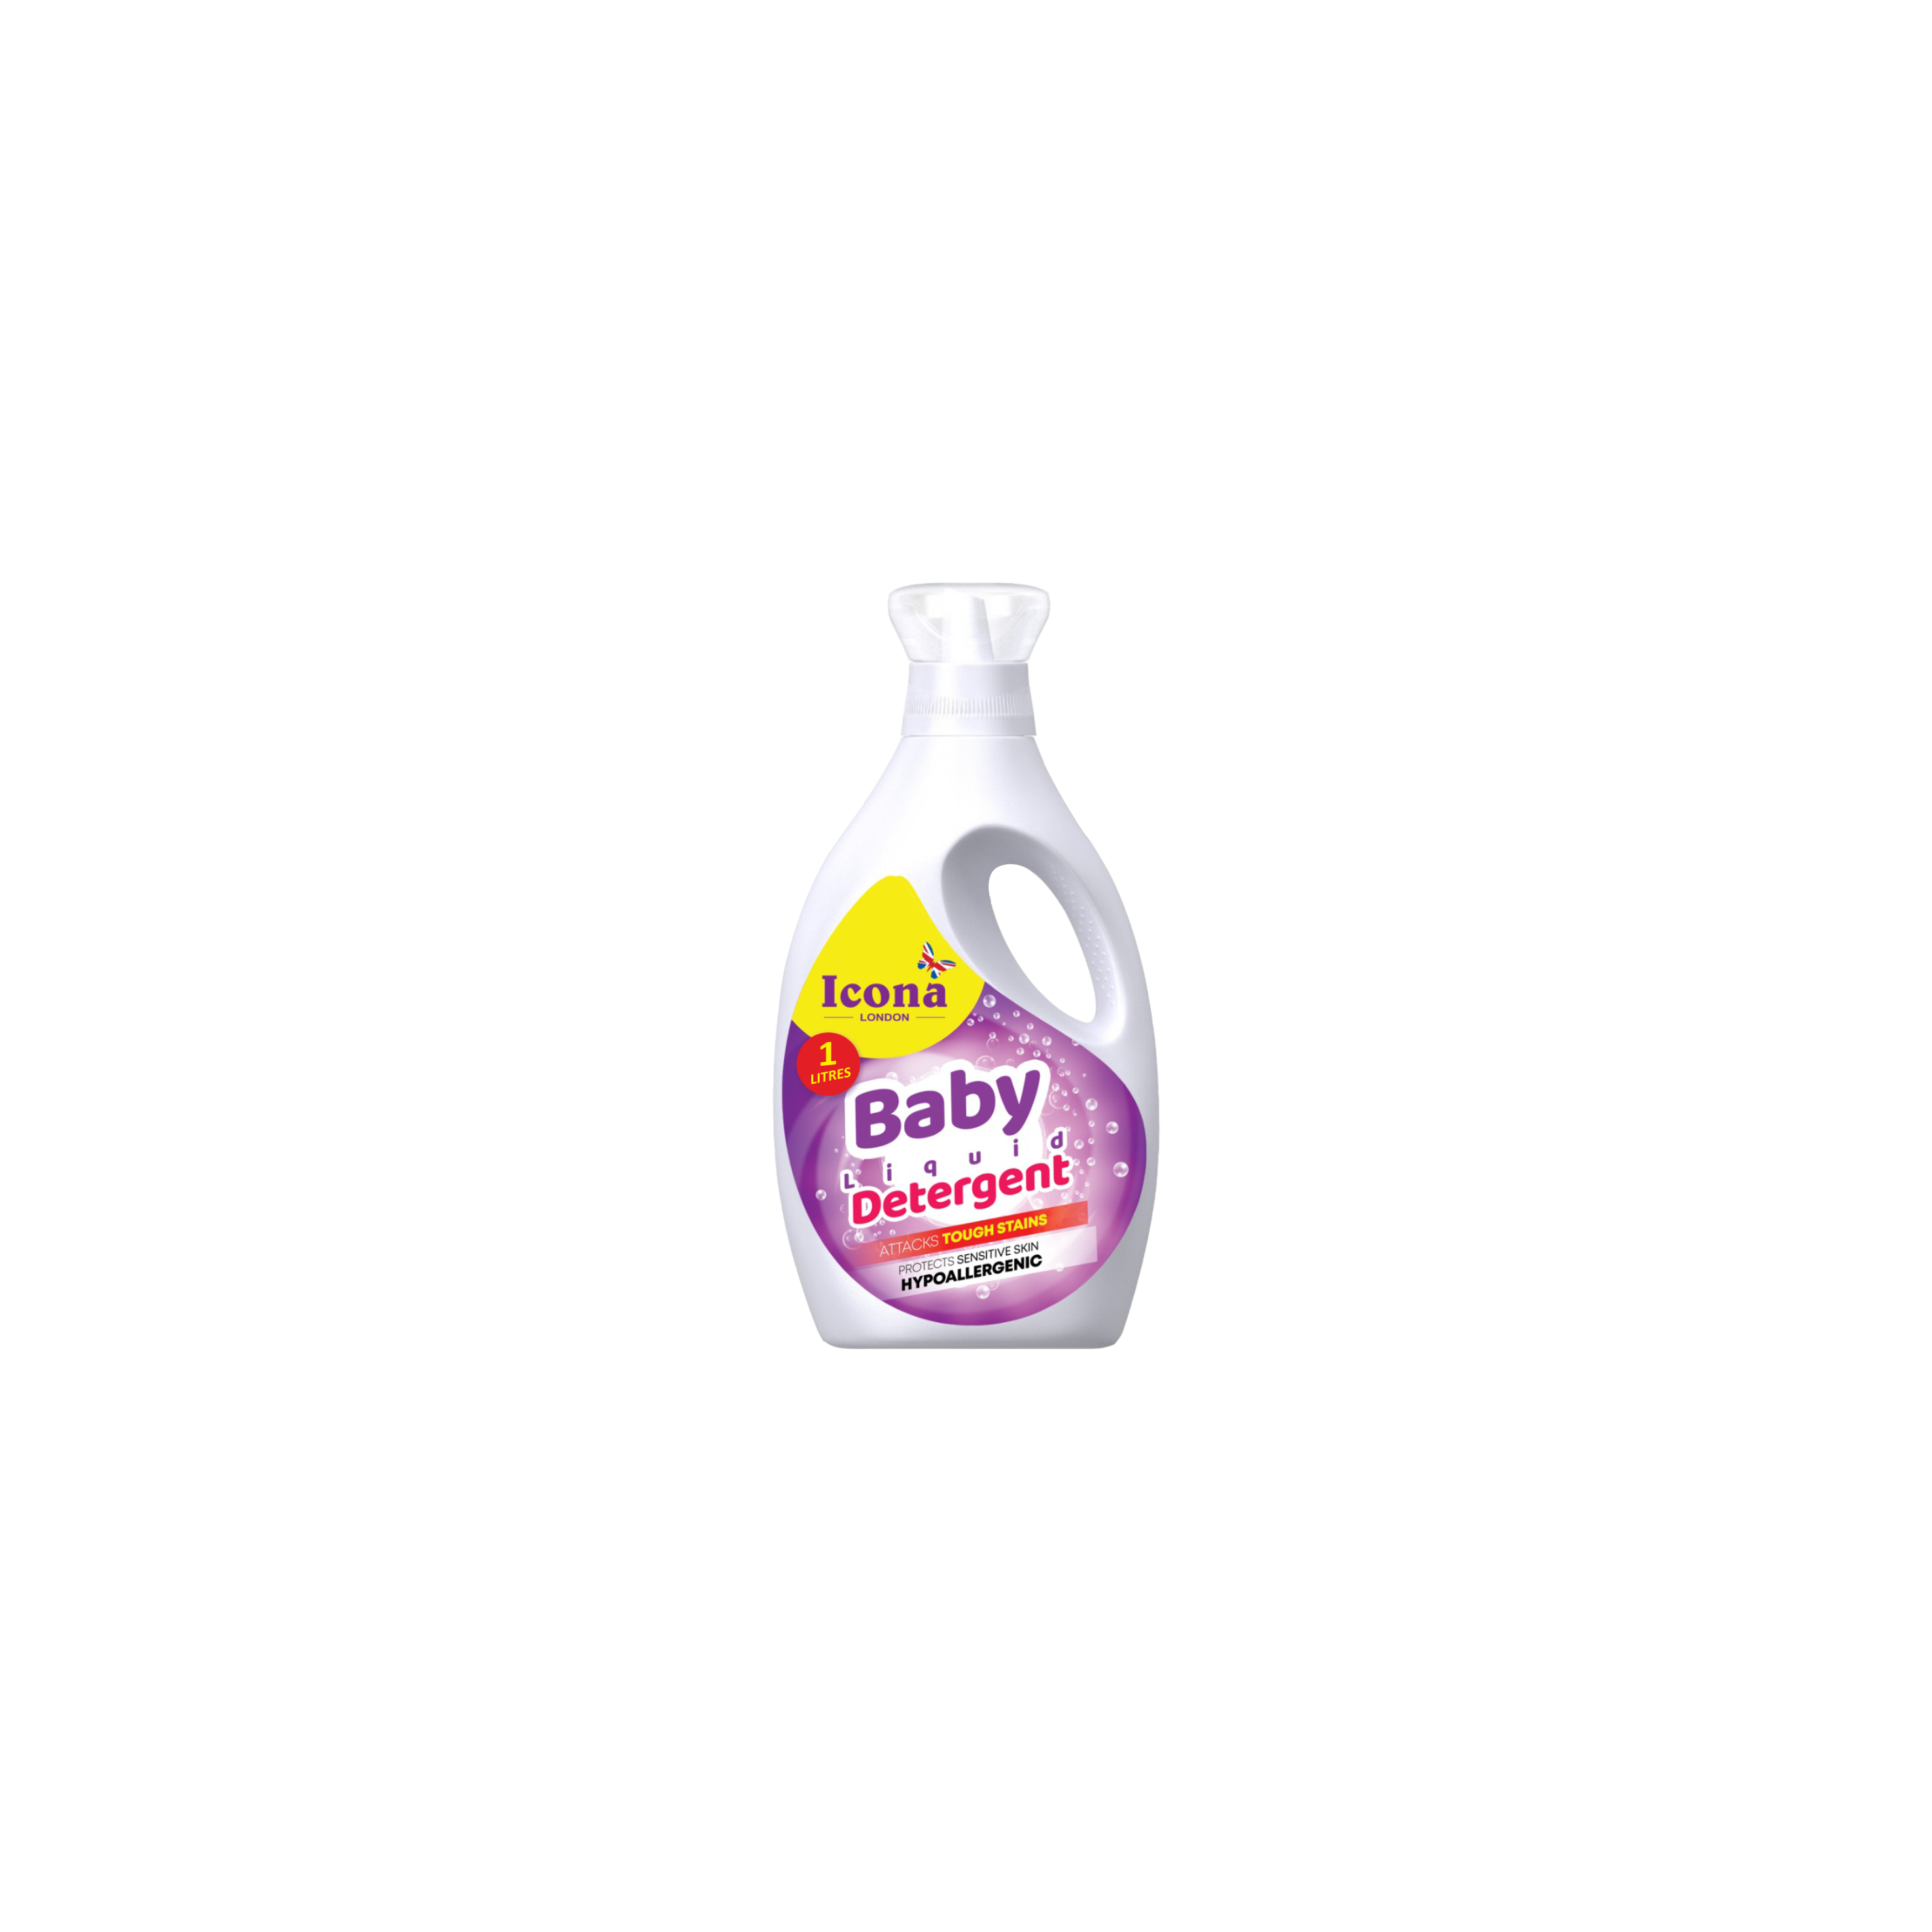 Baby Liquid Detergent (1 Liter)